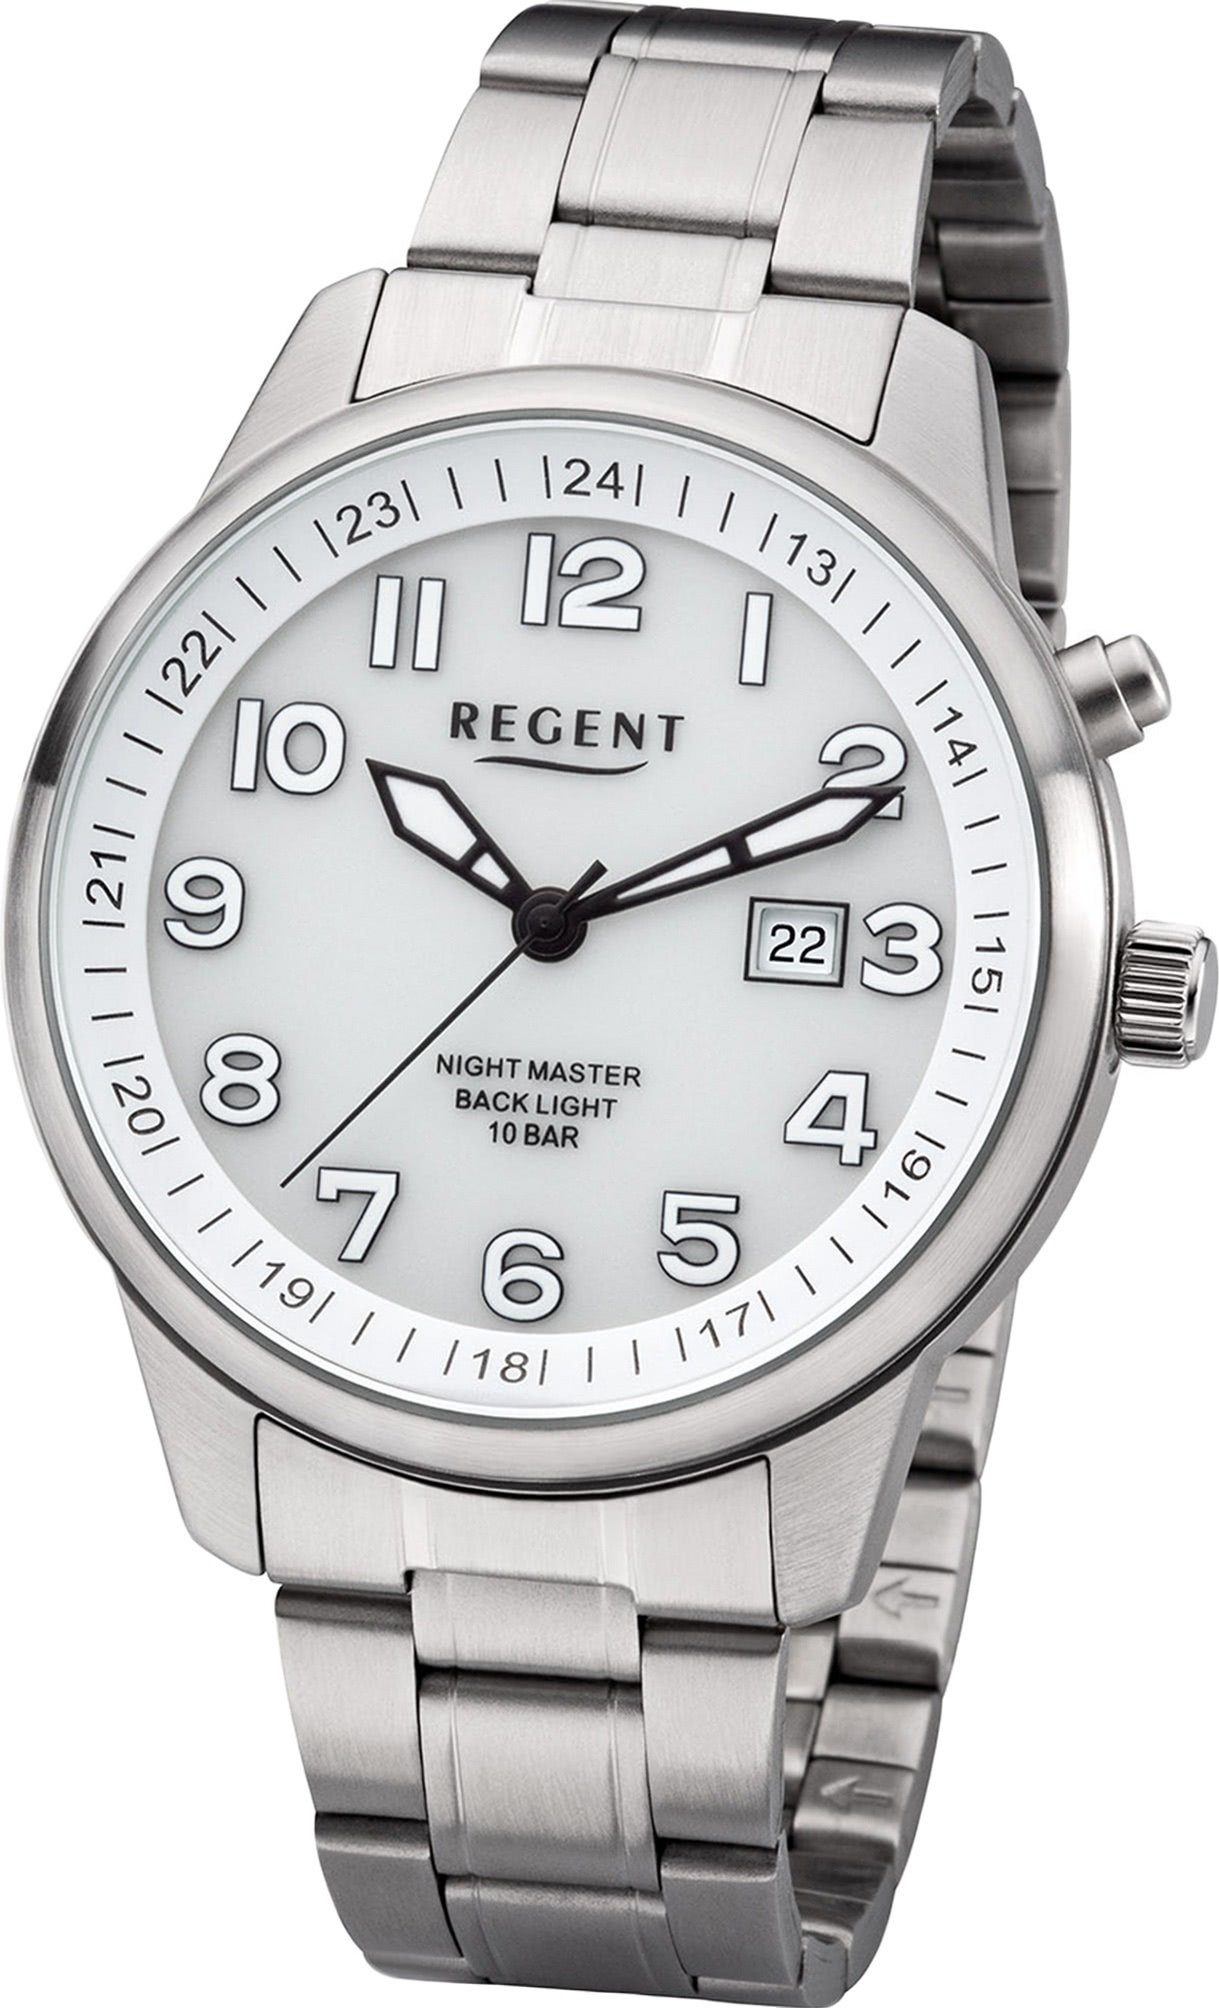 F-1187 (ca. Regent Quarzuhr Uhr Regent Analog, Metallarmband Herrenuhr Metall groß Herren Gehäuse, rundes 41mm) silber,